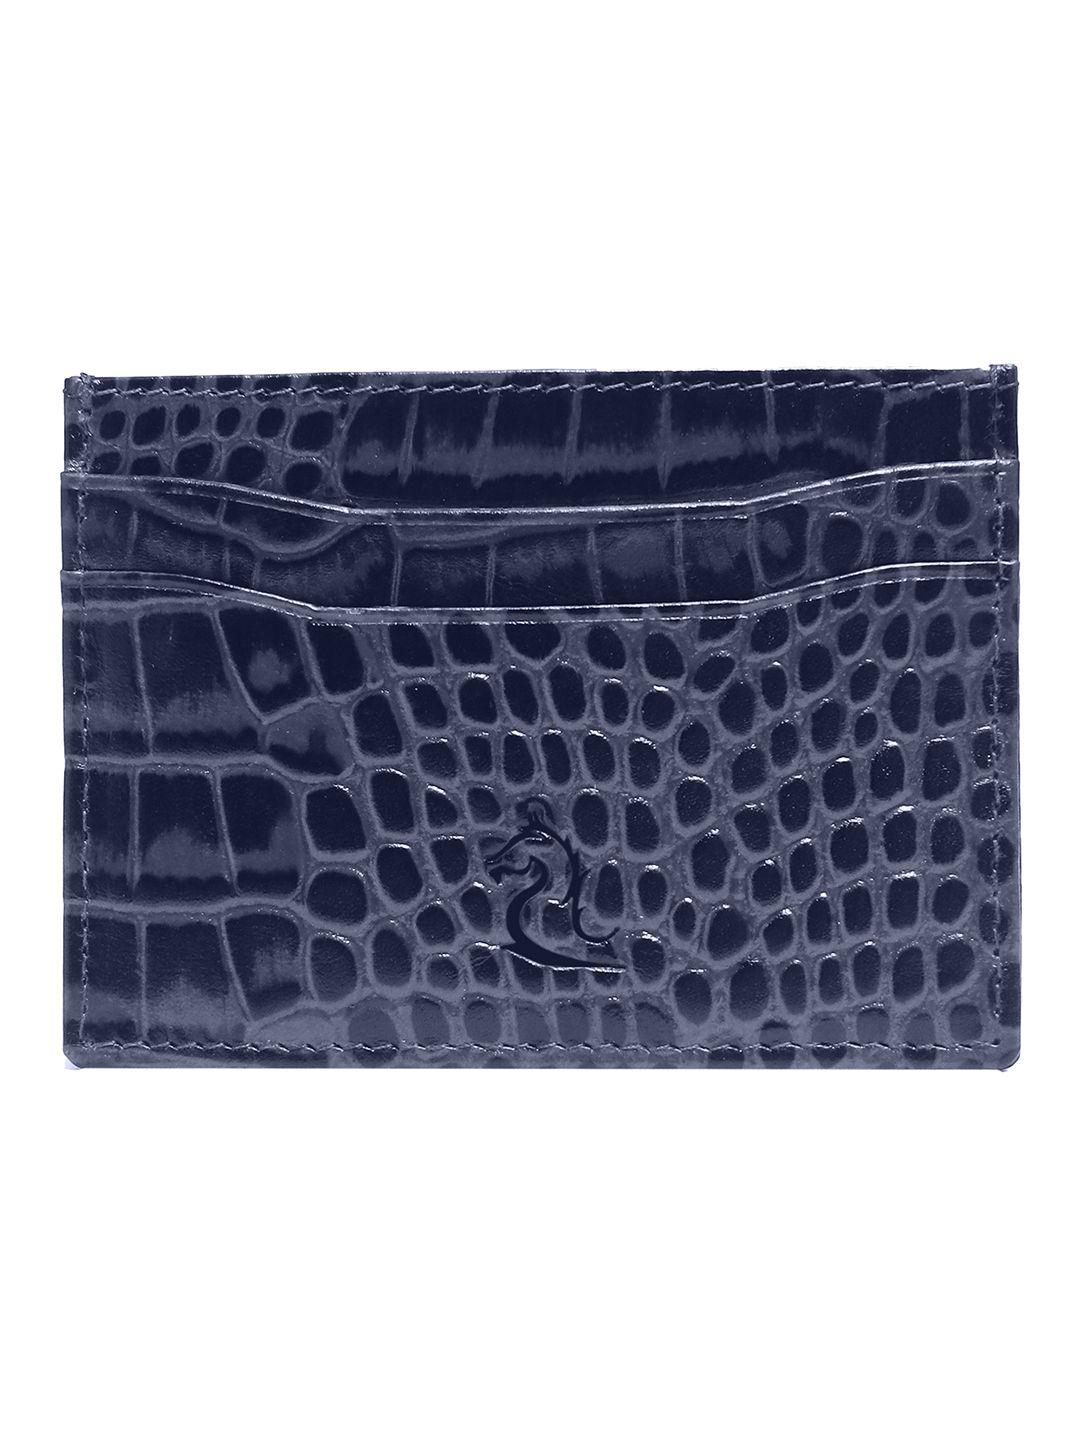 kara unisex navy blue leather croc textured card holder